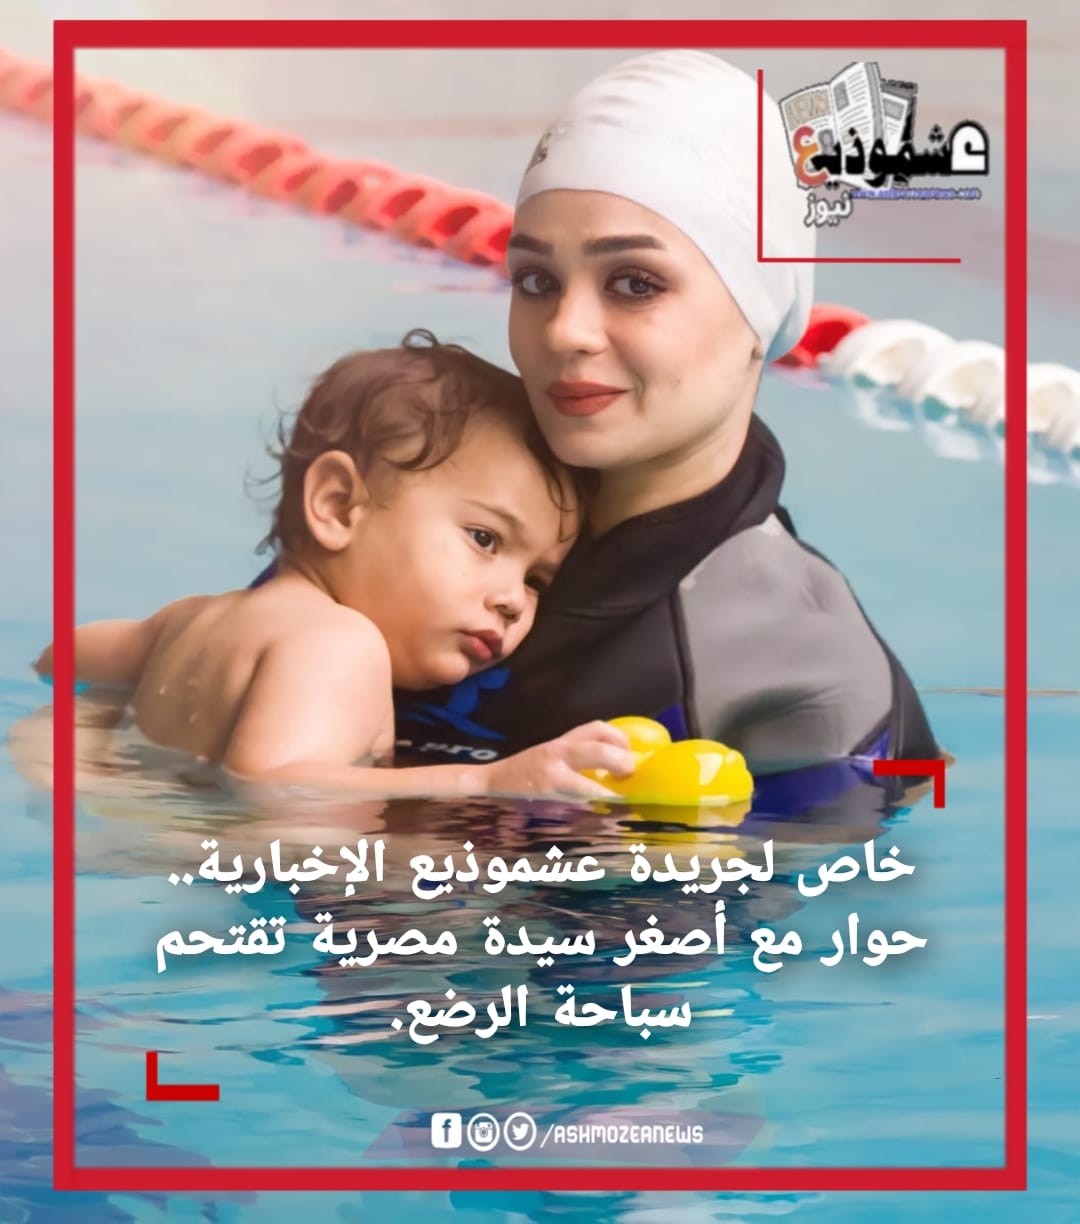 خاص لجريدة عشموذيع الإخبارية.. حوار مع أصغر سيدة مصرية تقتحم سباحة الرضع